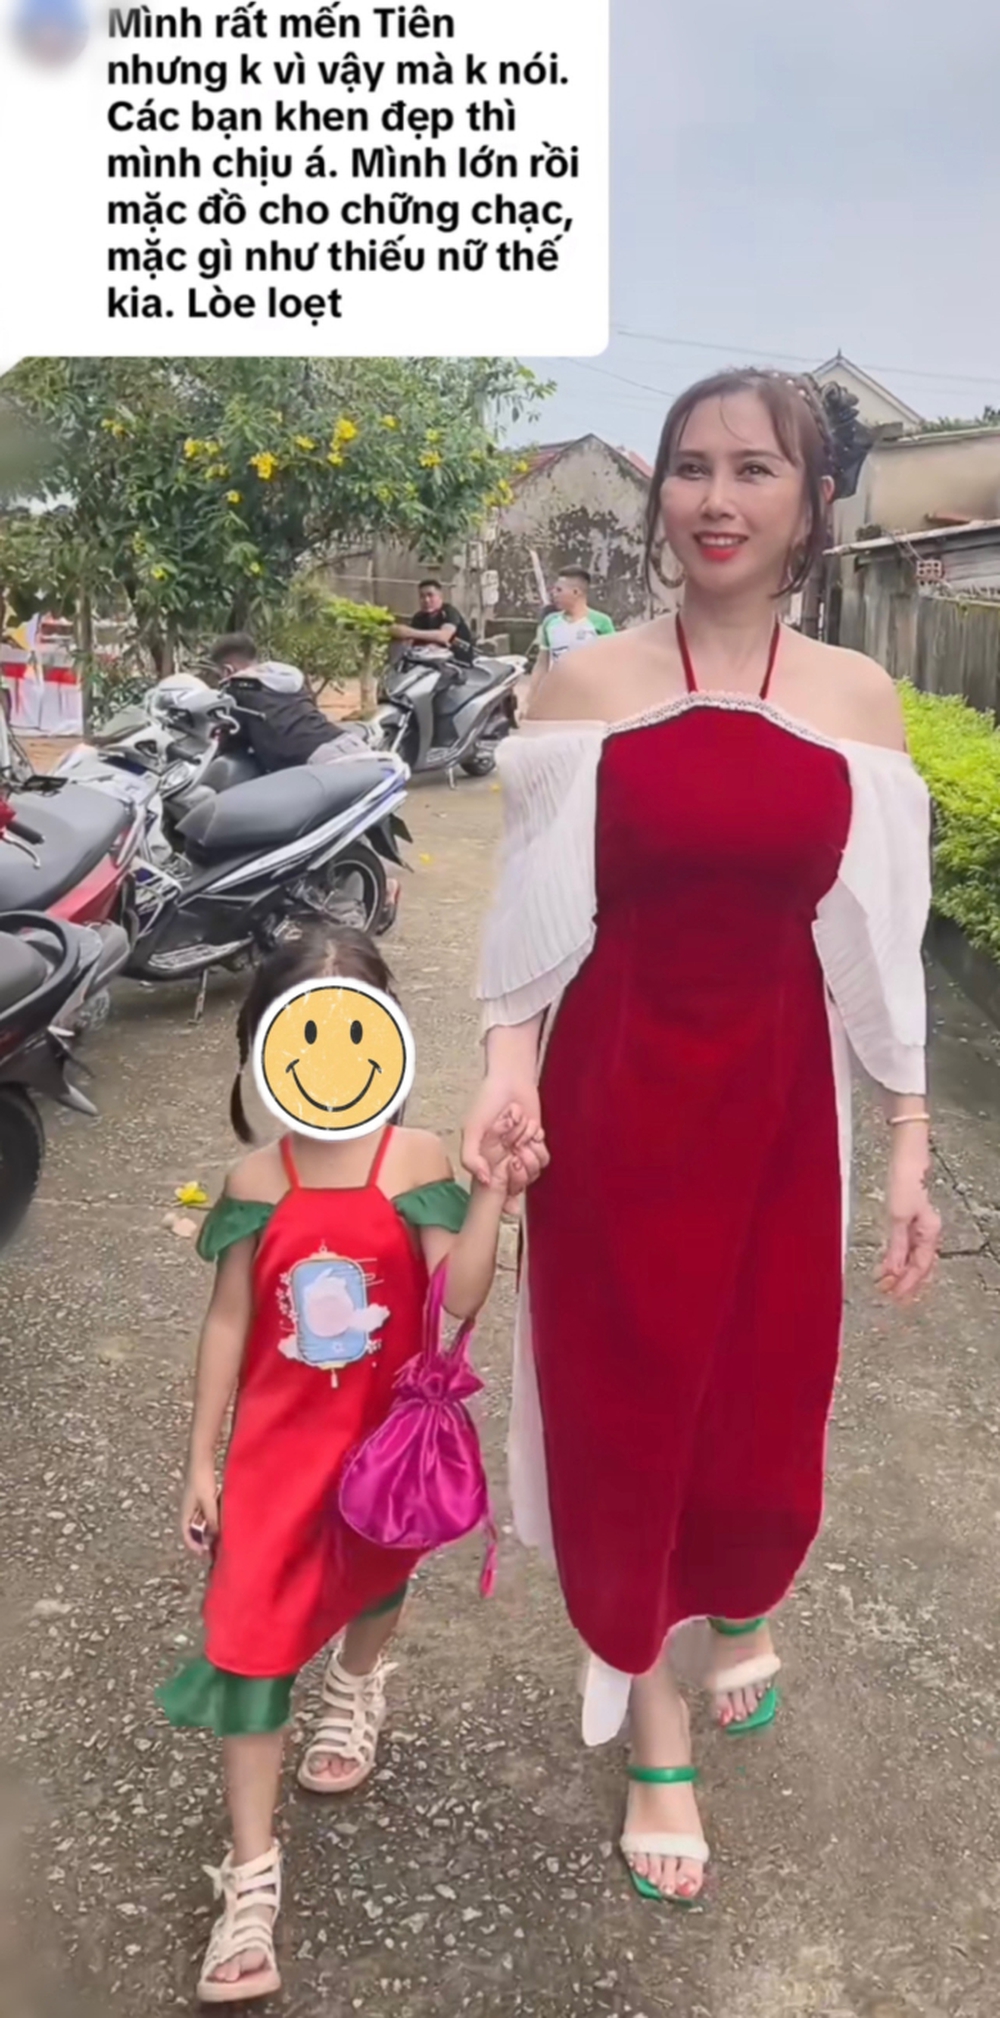 Bị chê bai ăn mặc loè loẹt, mẹ ruột Hoa hậu Thuỳ Tiên lên tiếng đáp trả rõ thái độ - Ảnh 1.